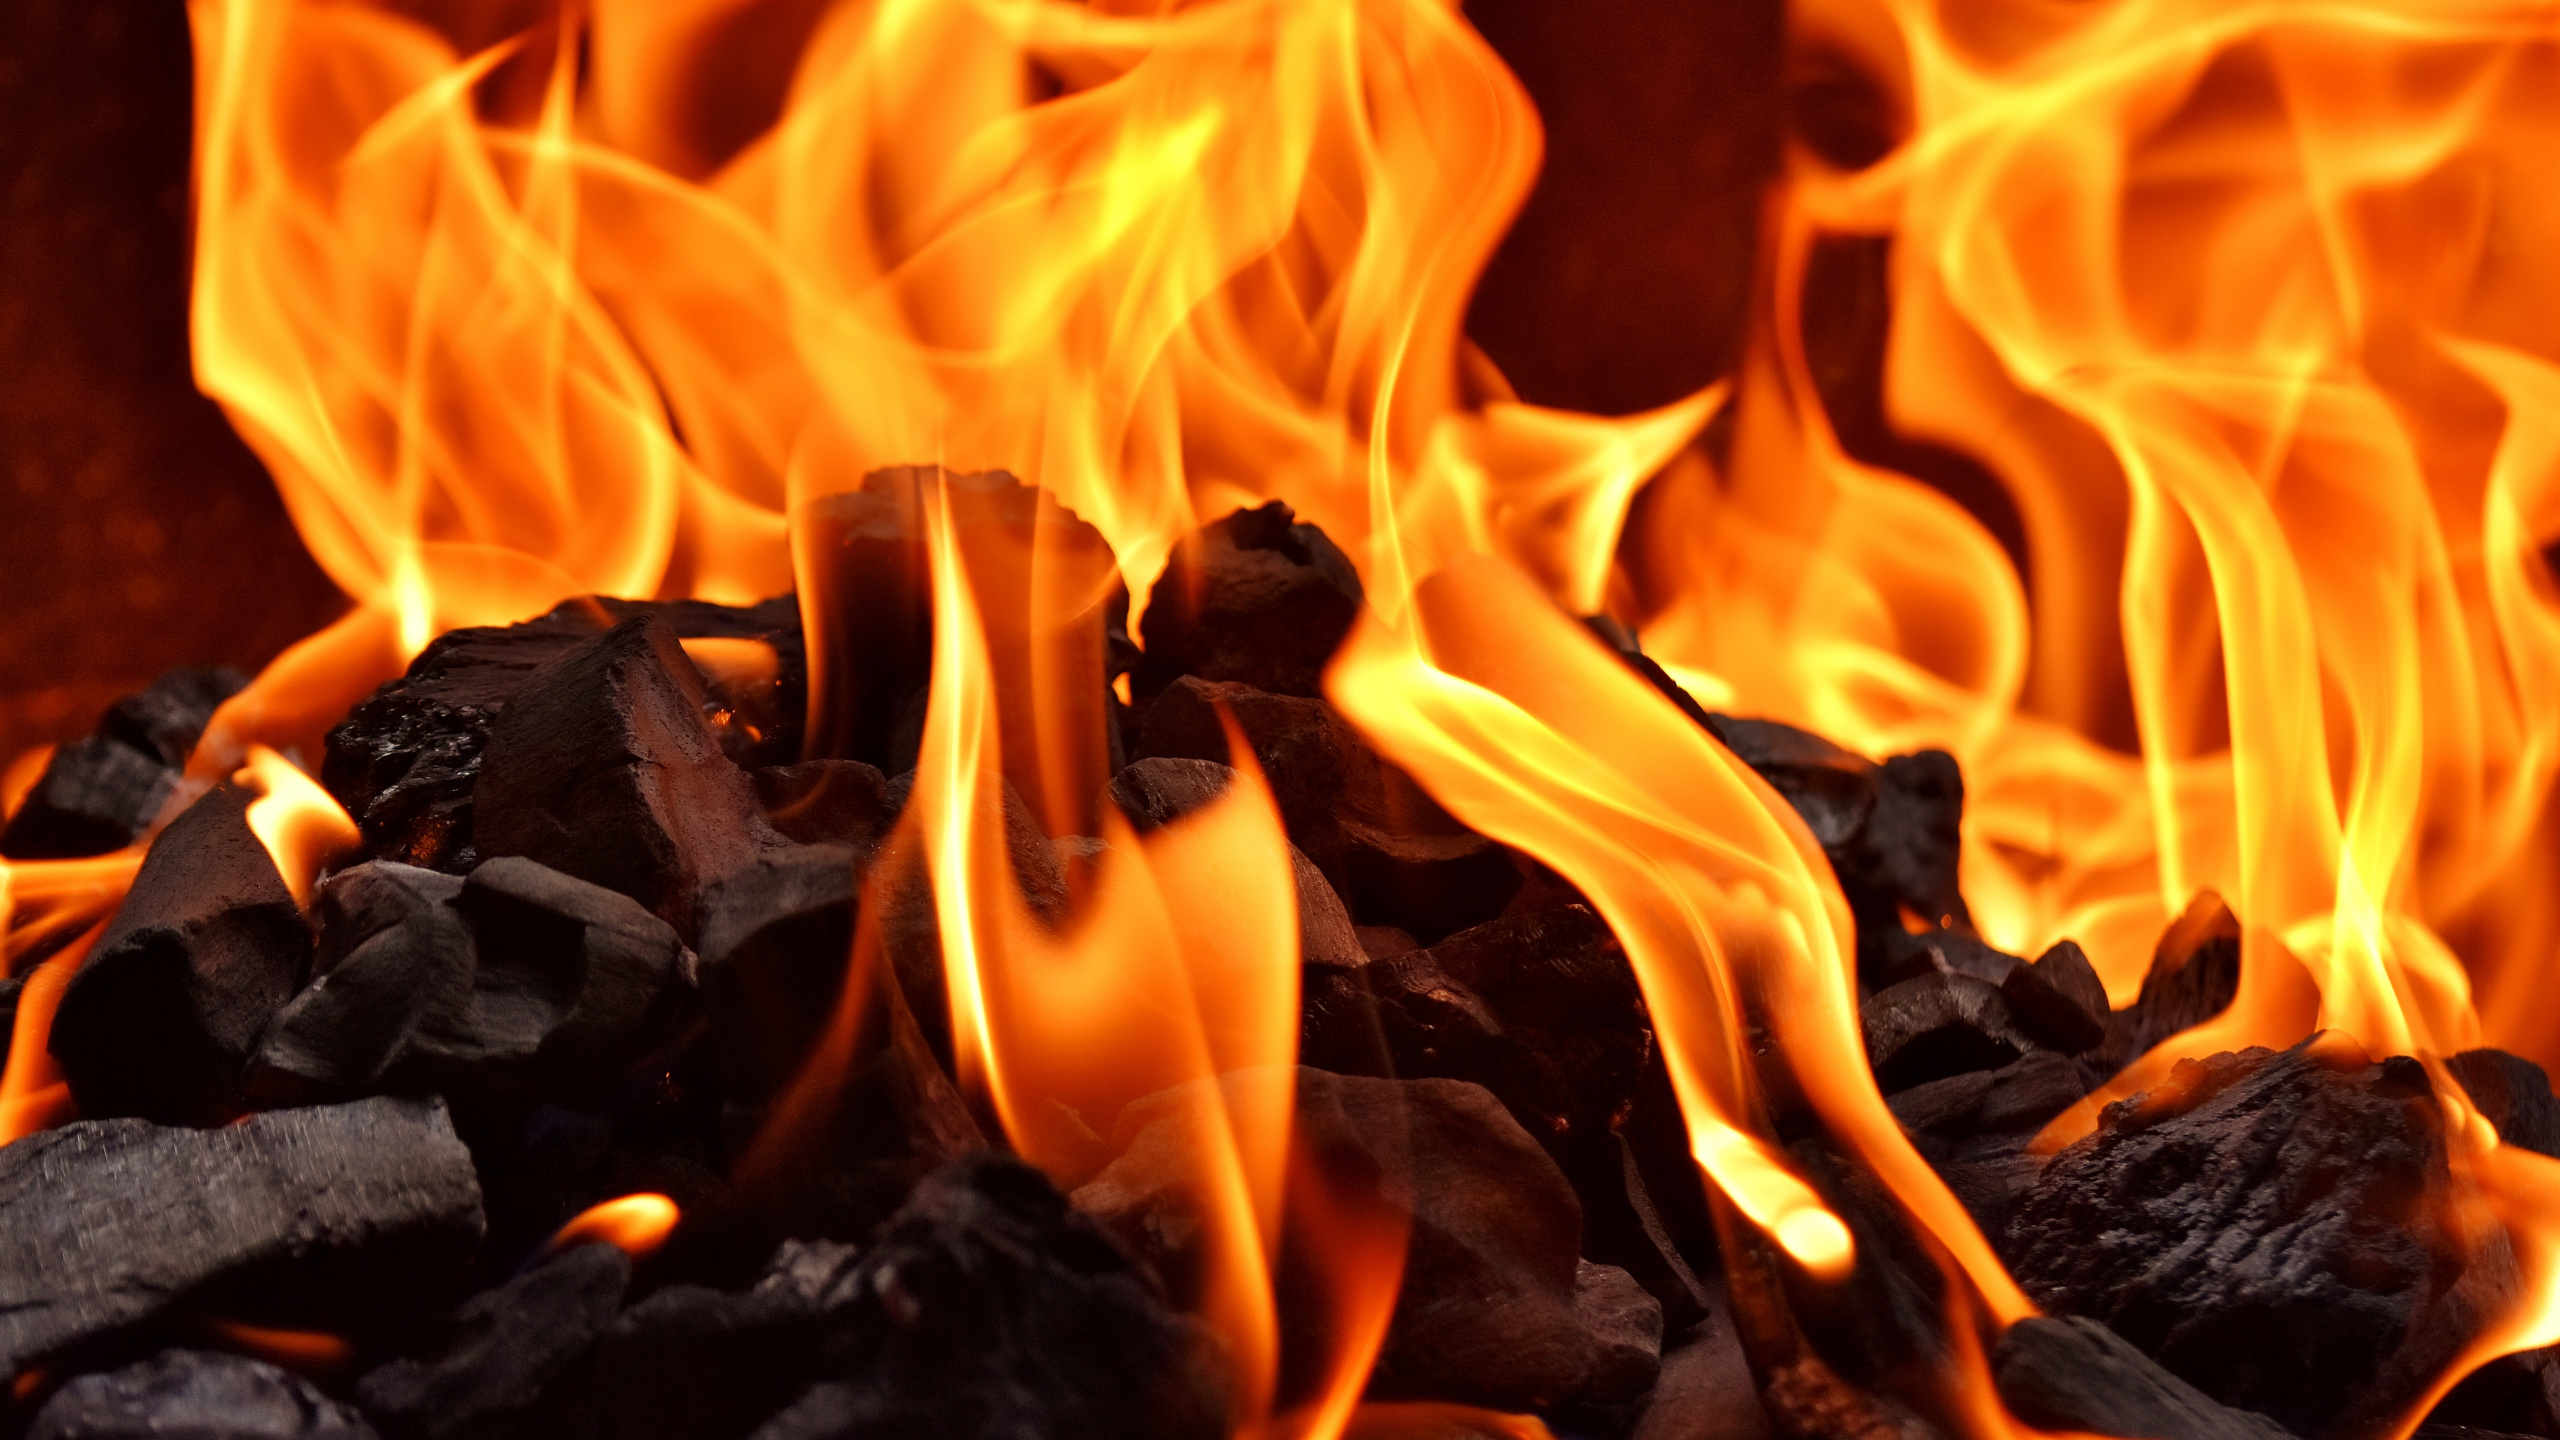 火焰, 木炭, 燃烧, 热, 篝火 壁纸 2560x1440 允许